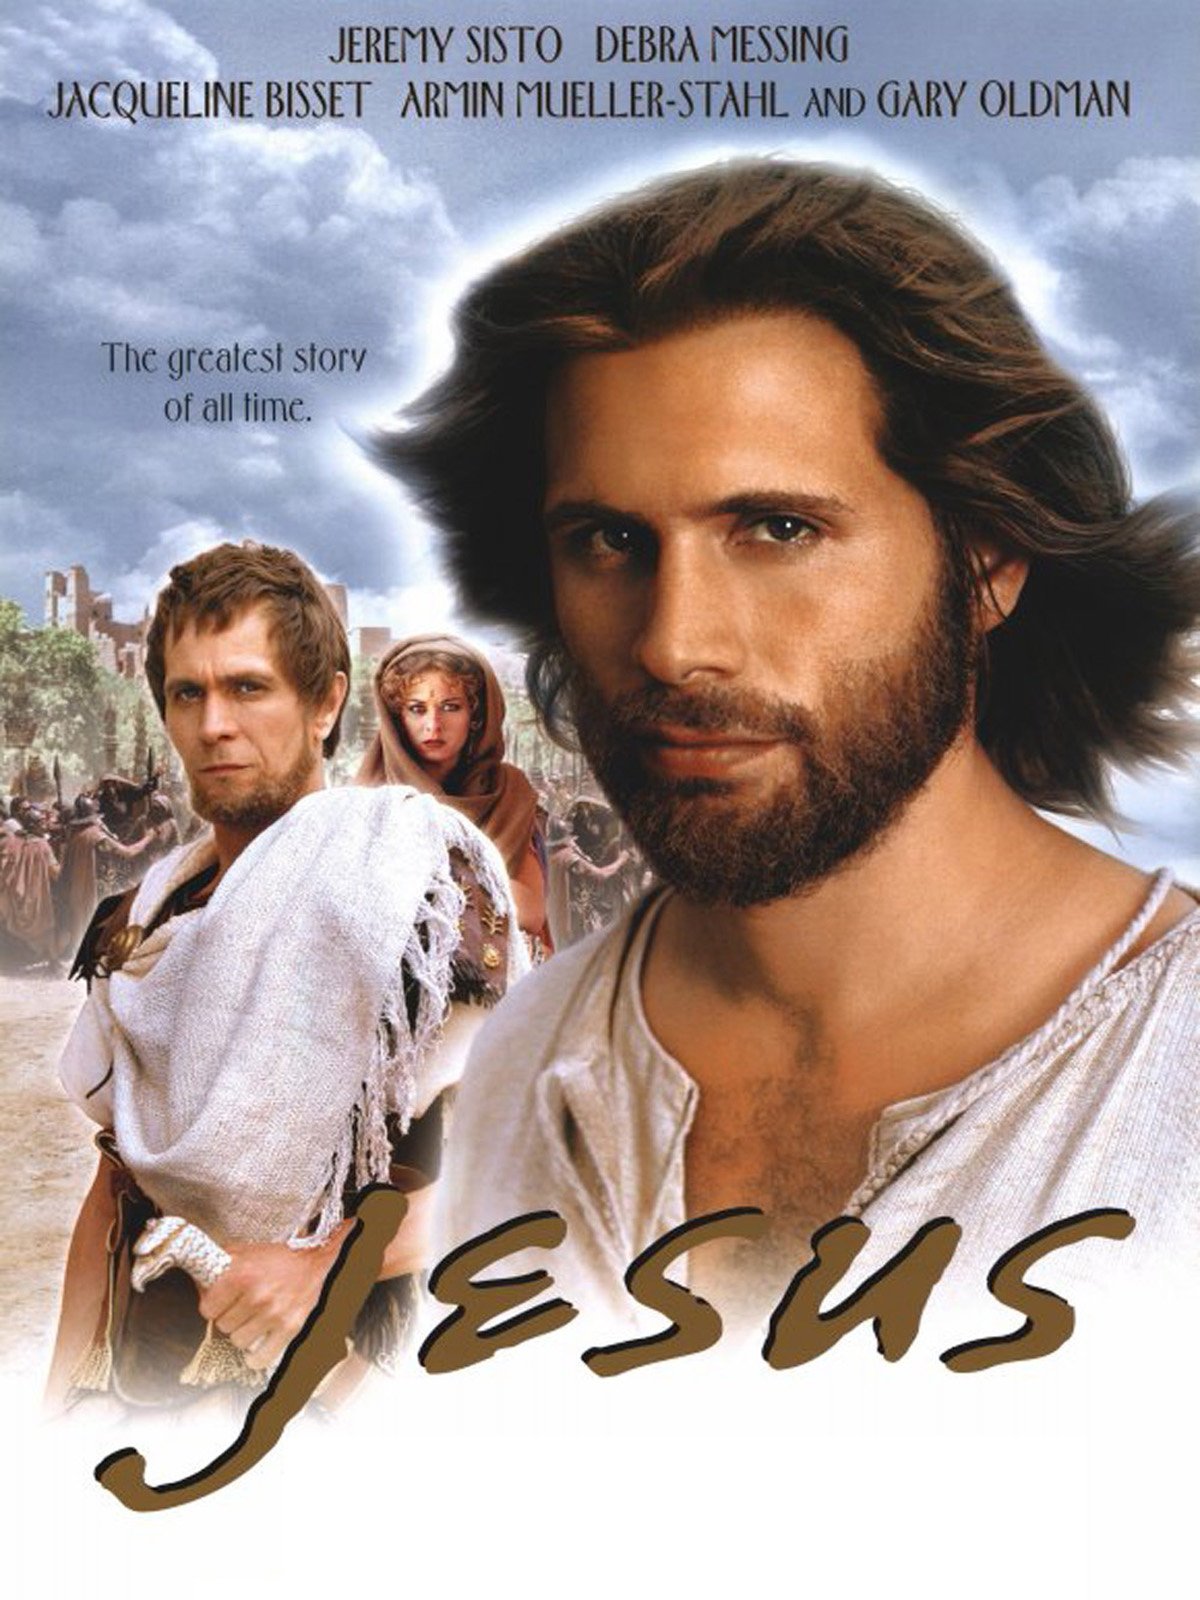 Сказания иисуса. Иисус 1999 Джереми систо. Библейские сказания Иисус 1999. Библейские сказания Джереми систо. Библейские сказания 1999 с Джереми систо.